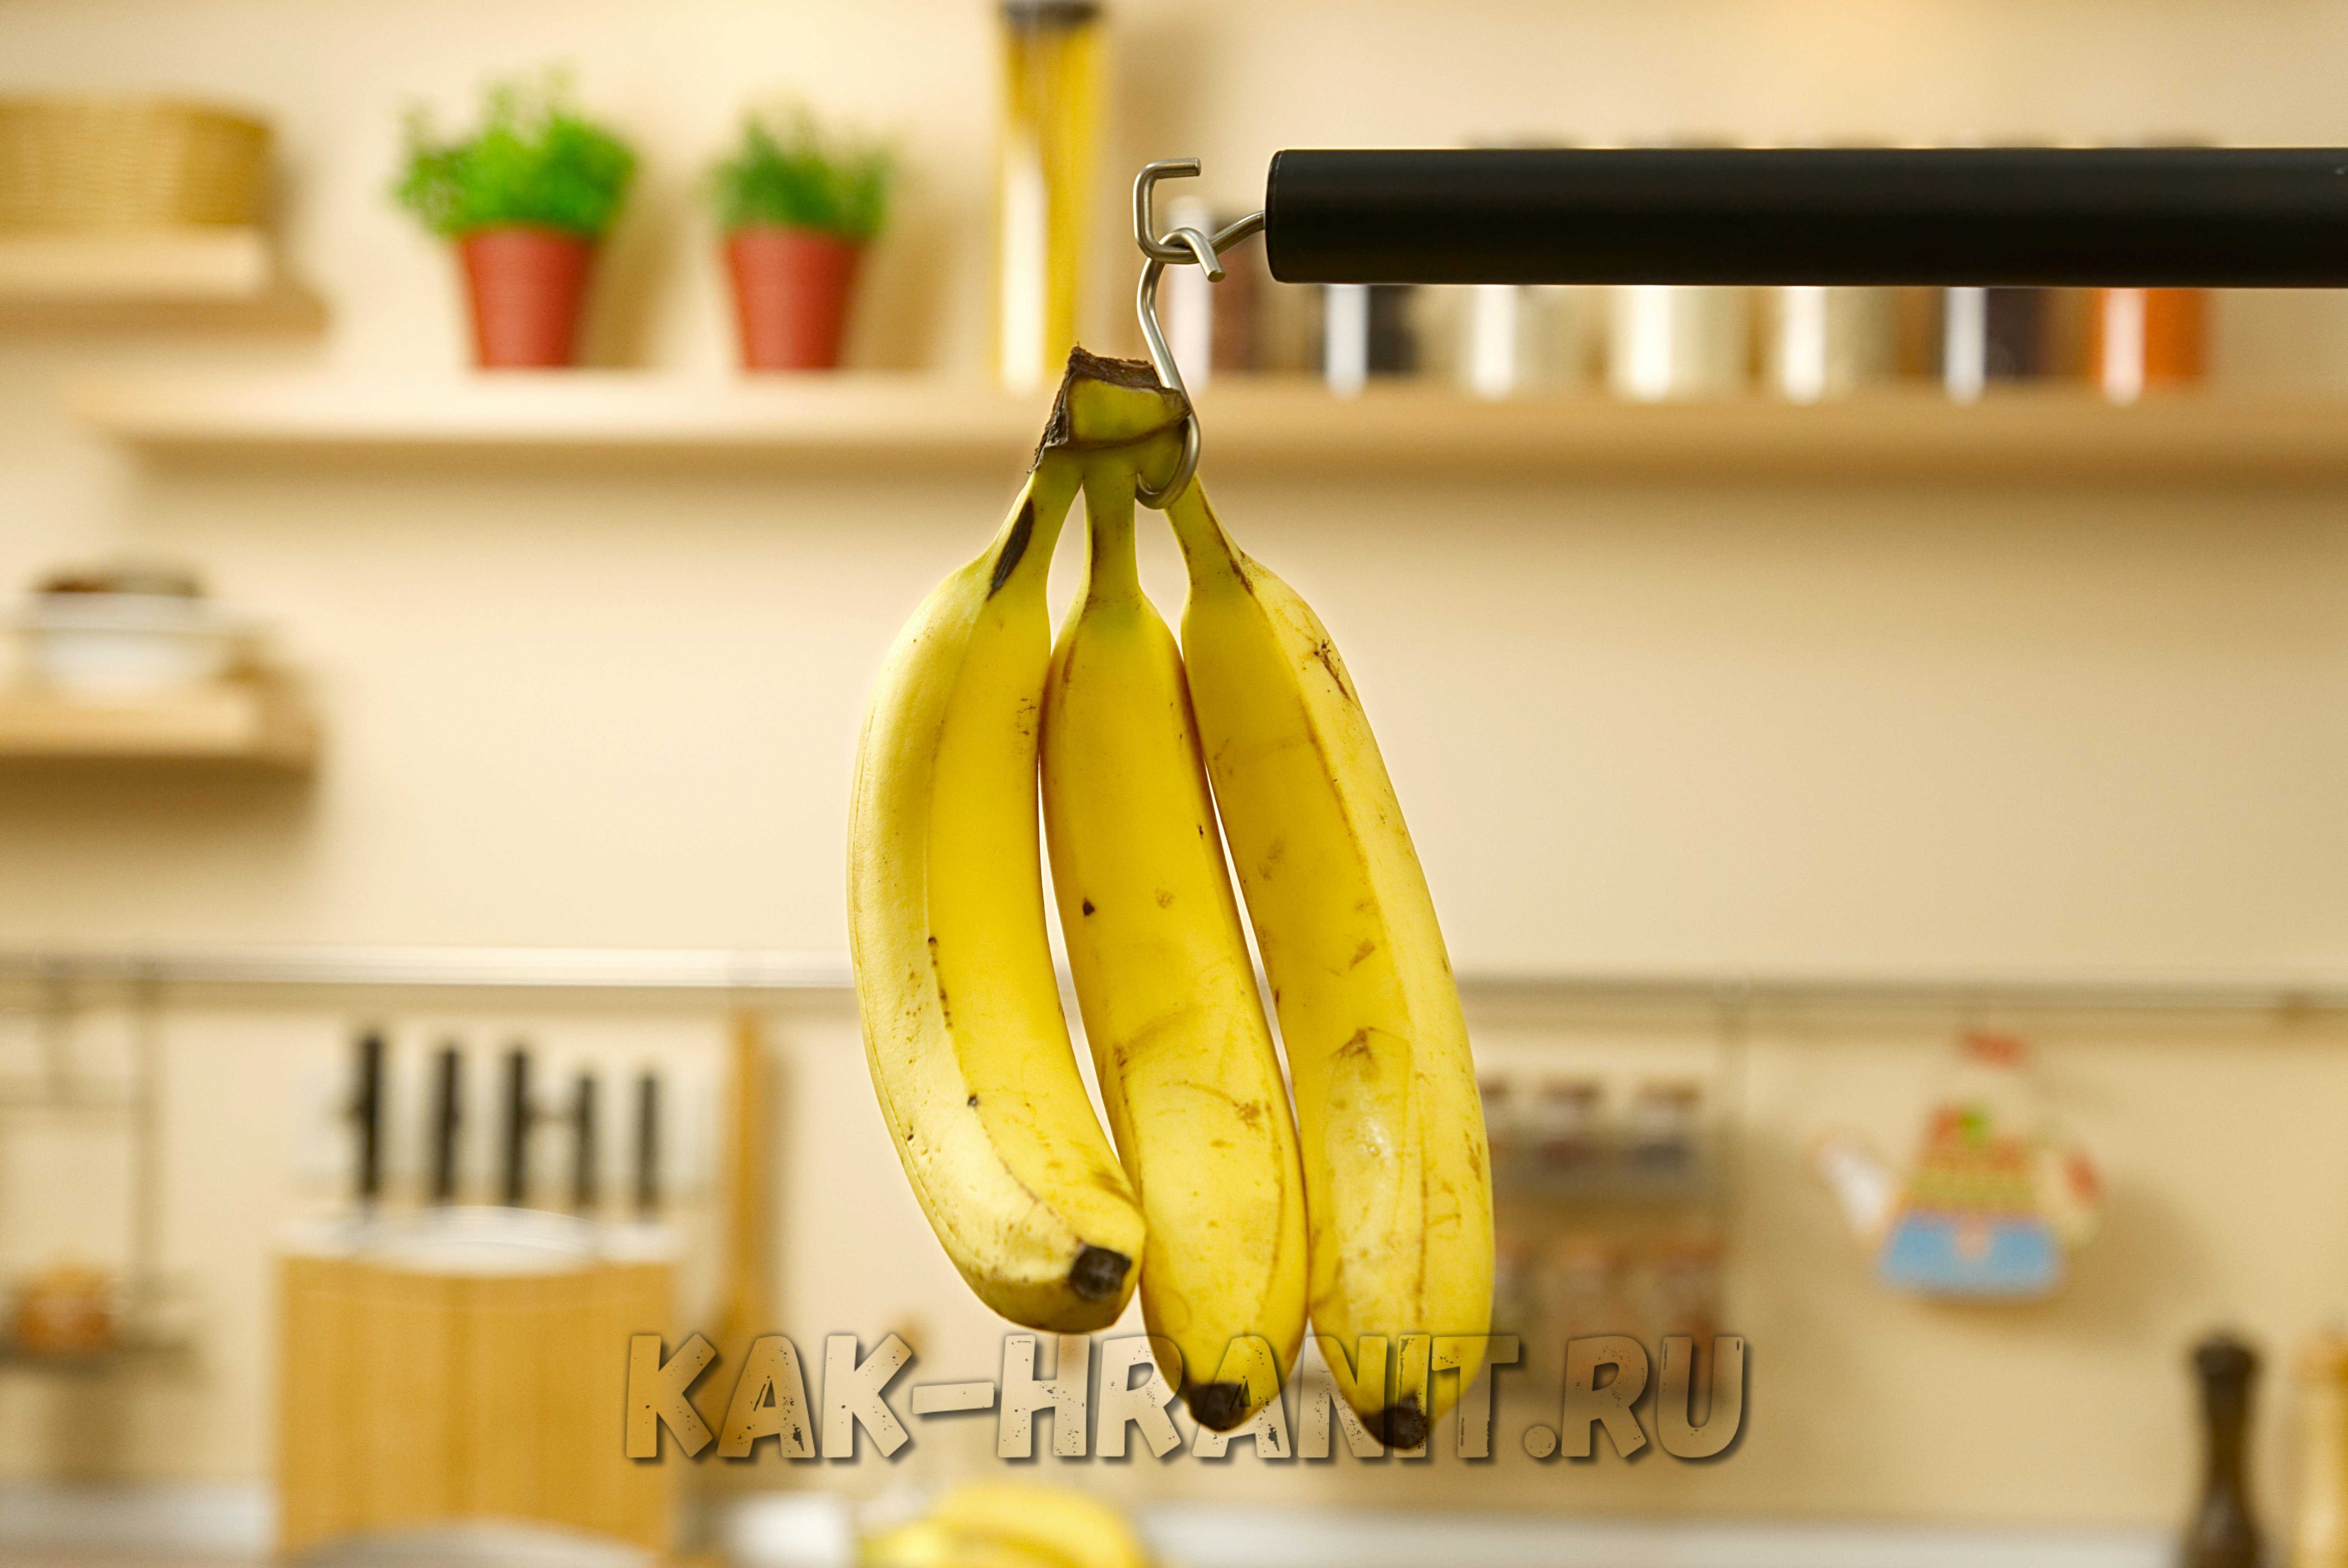 Как хранить бананы дома, чтобы они не чернели: маленькие хитрости и рекомендации